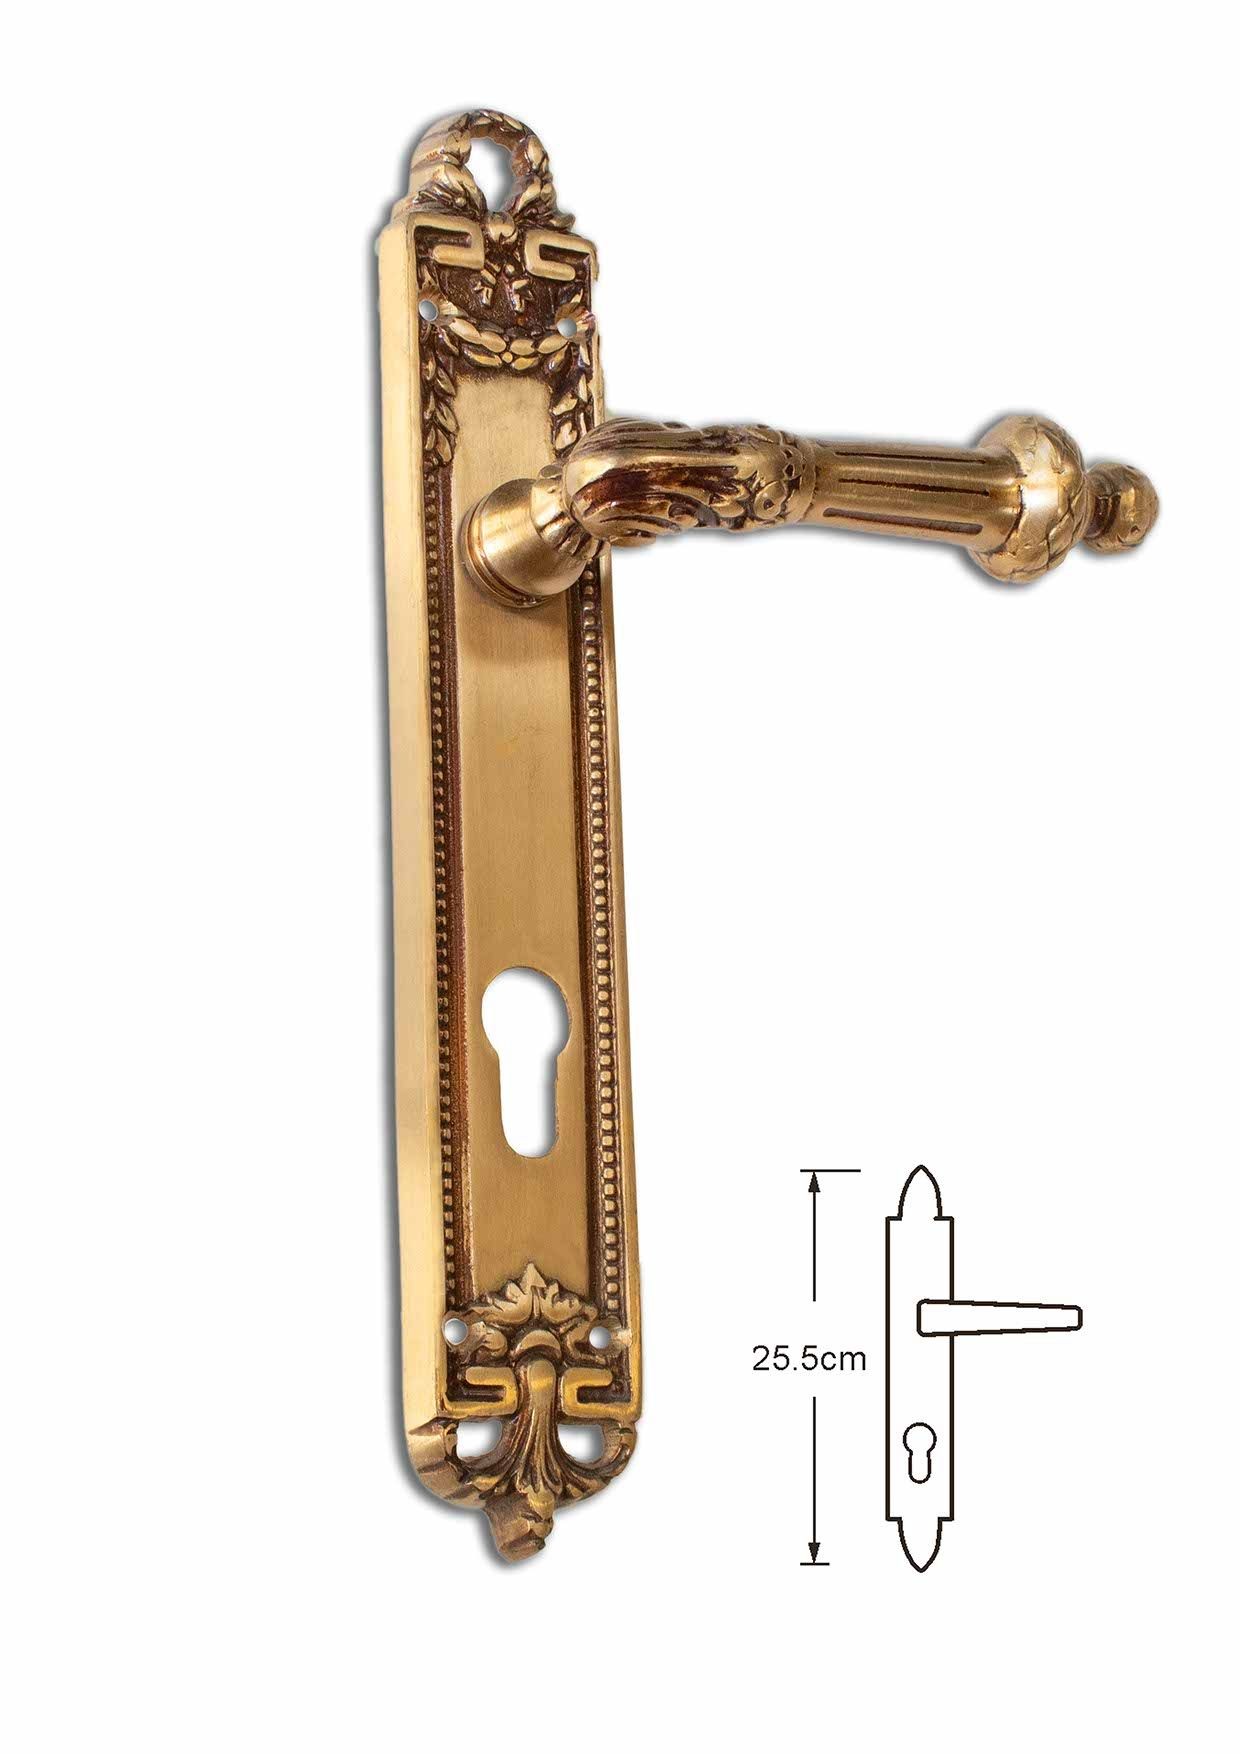 Custom Brass Pull Handles: Artisanal Elegance for Your Doors